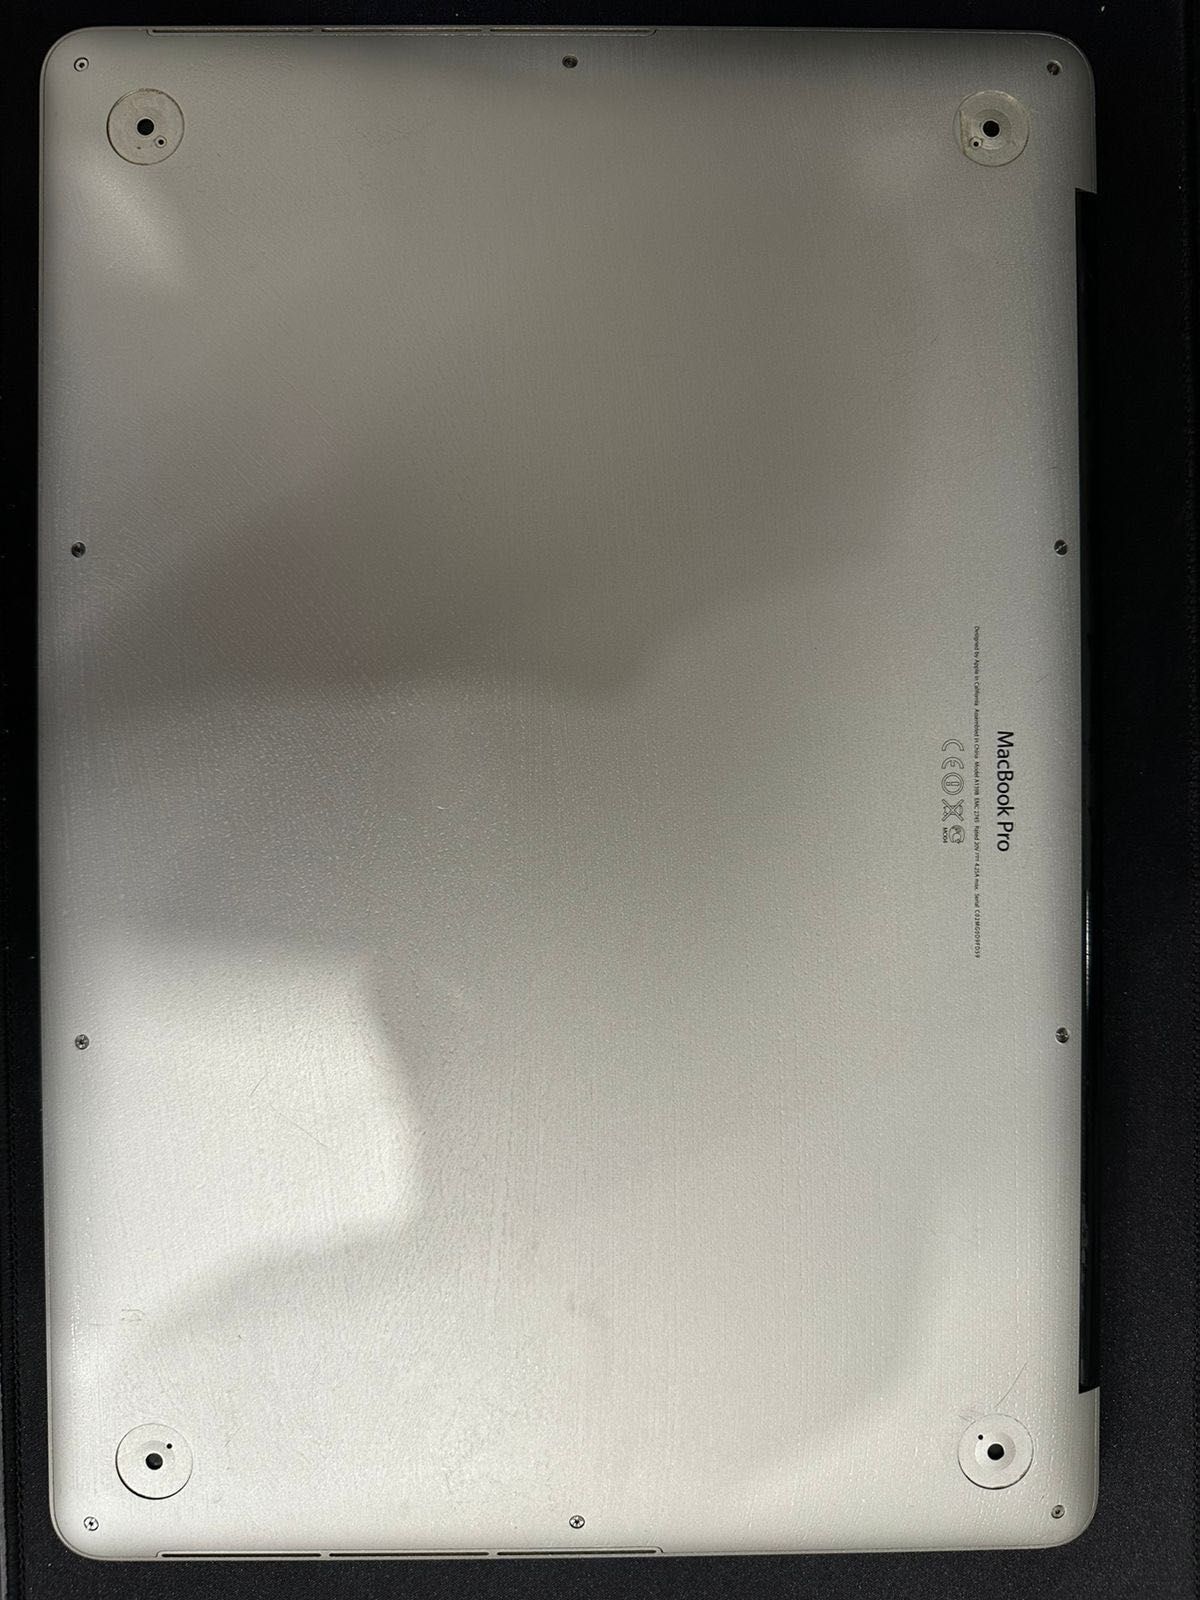 MacBook Pro 15 Retina (конец 2013 года)